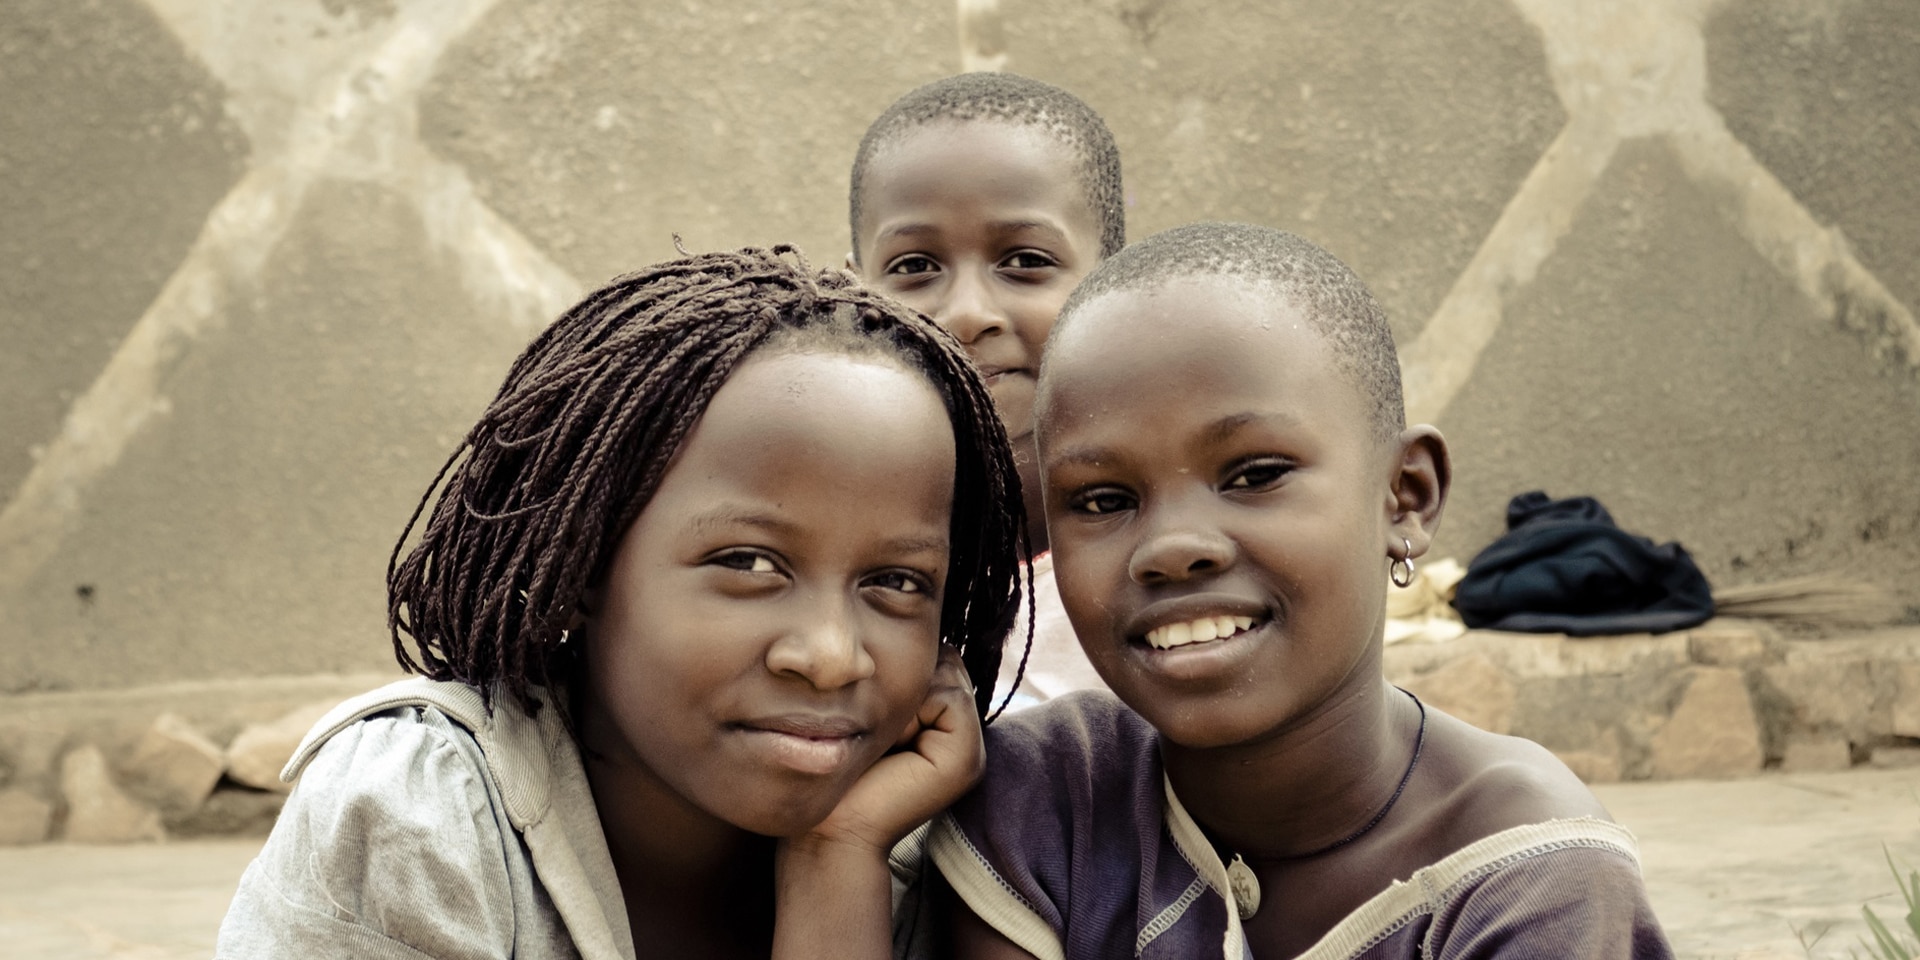 Trois enfants de la rue prennent la pose devant l’objectif d’un appareil photo à Kampala, Ouganda.